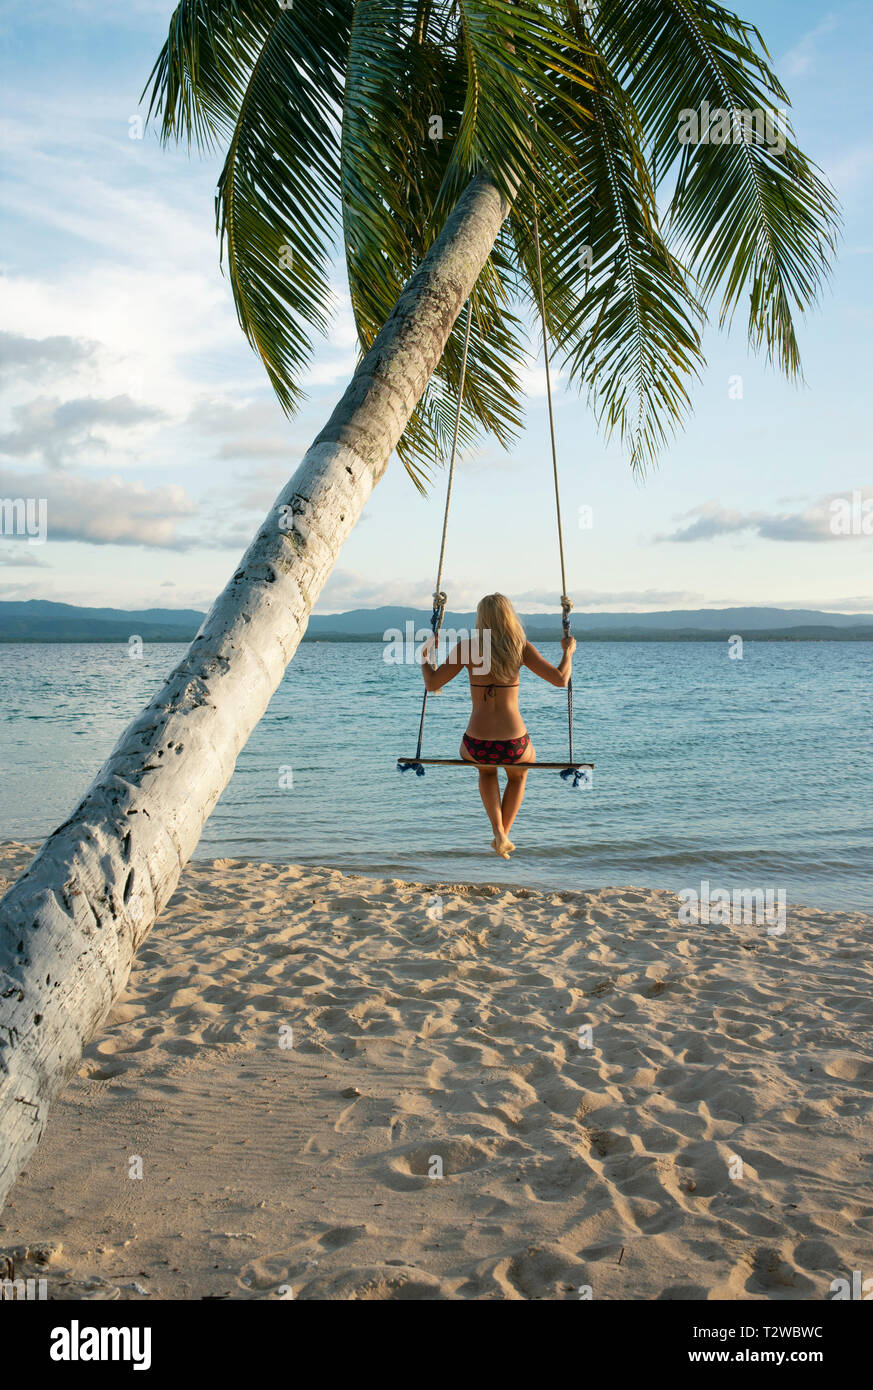 Ansicht der Rückseite Frau in einem Strand Schwingen zu eine Palme in San Blas Inseln beigefügt. Reiseziel, Lebensstil/Urlaub Konzept. Panama, Okt 2018 Stockfoto